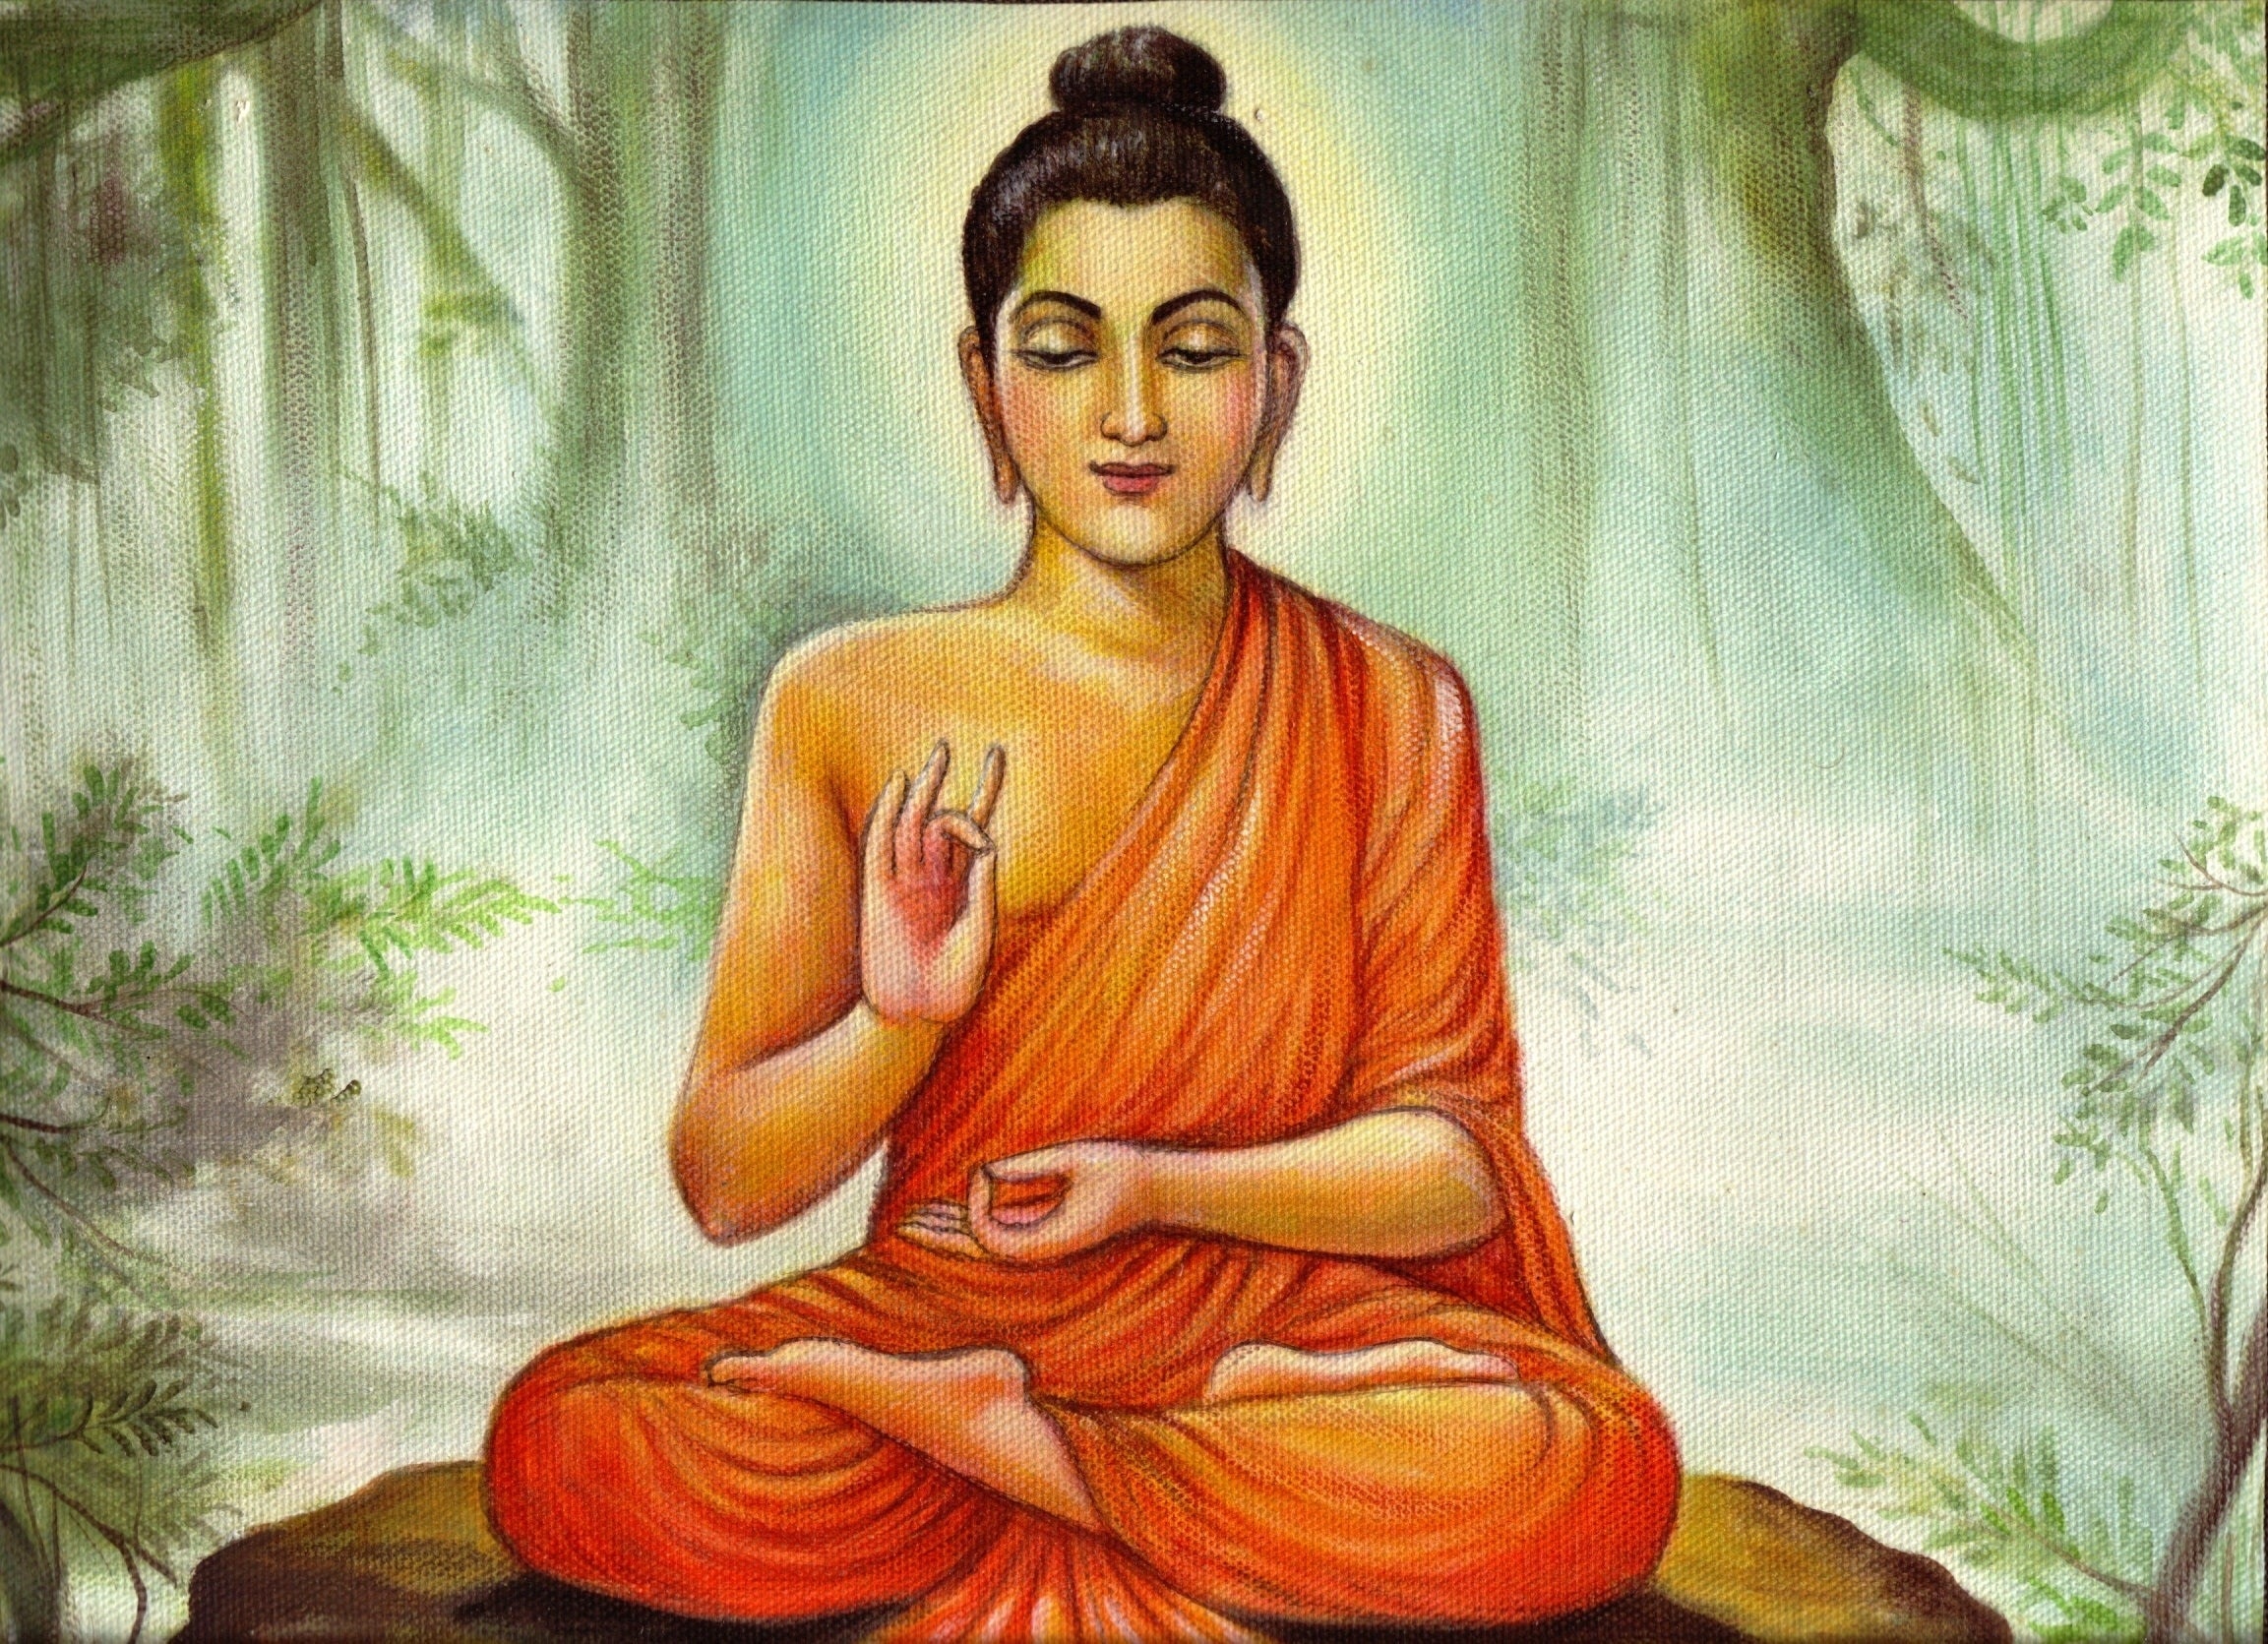 Buddha doing meditation